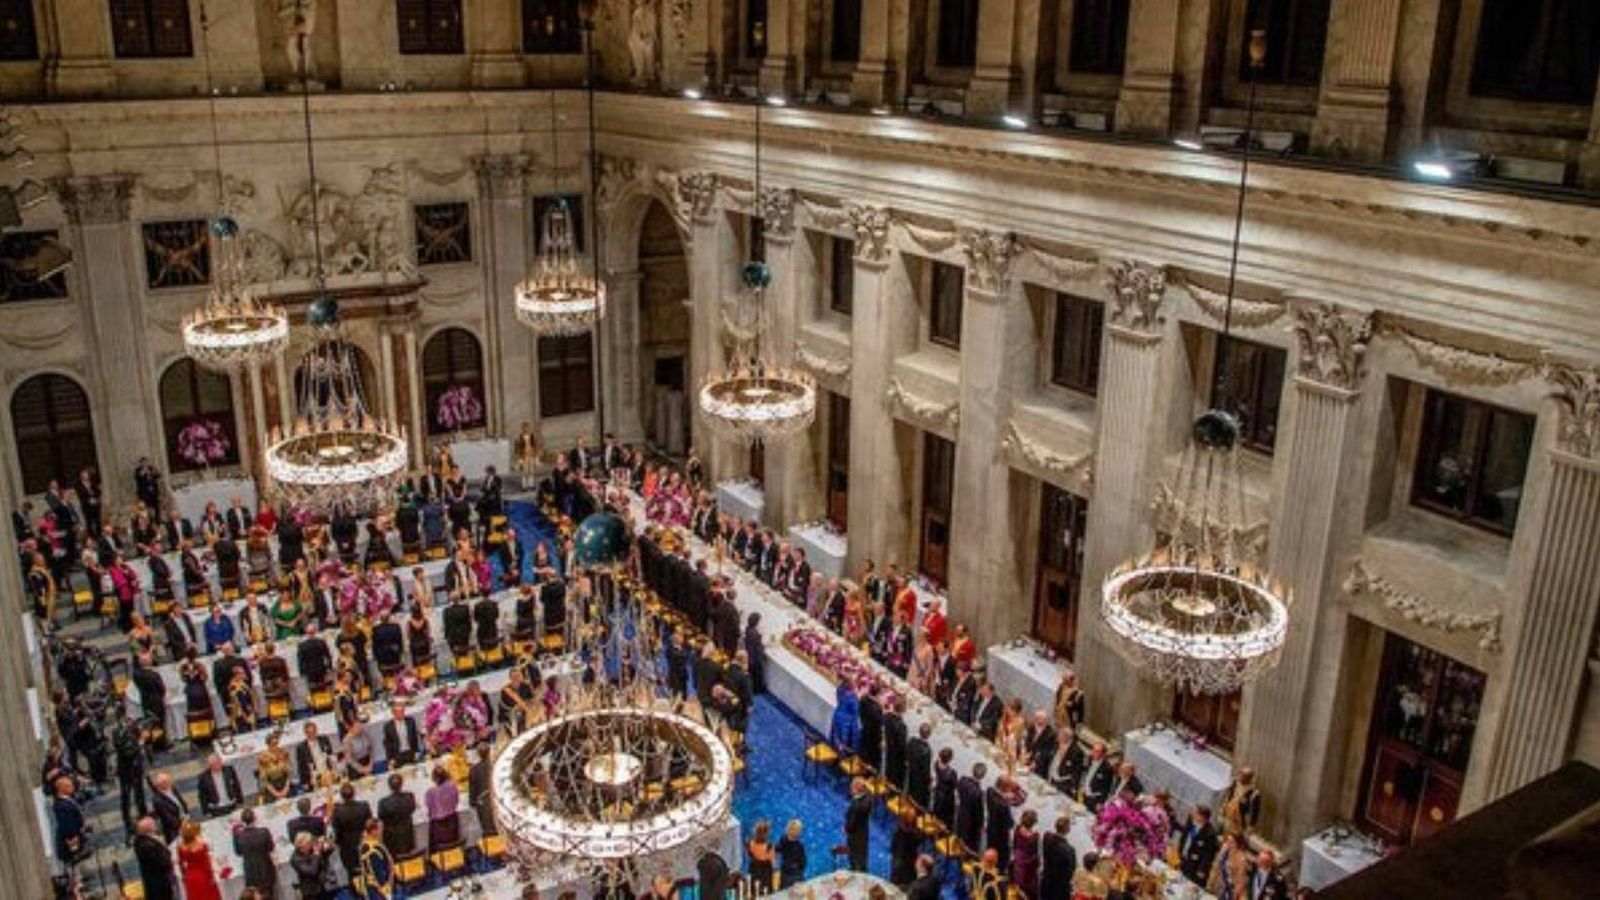 El Palacio Real de Ámsterdam, donde se celebrará la cena de gala entre los Reyes de España y de Holanda. (Cortesía/Paleis Amsterdam)